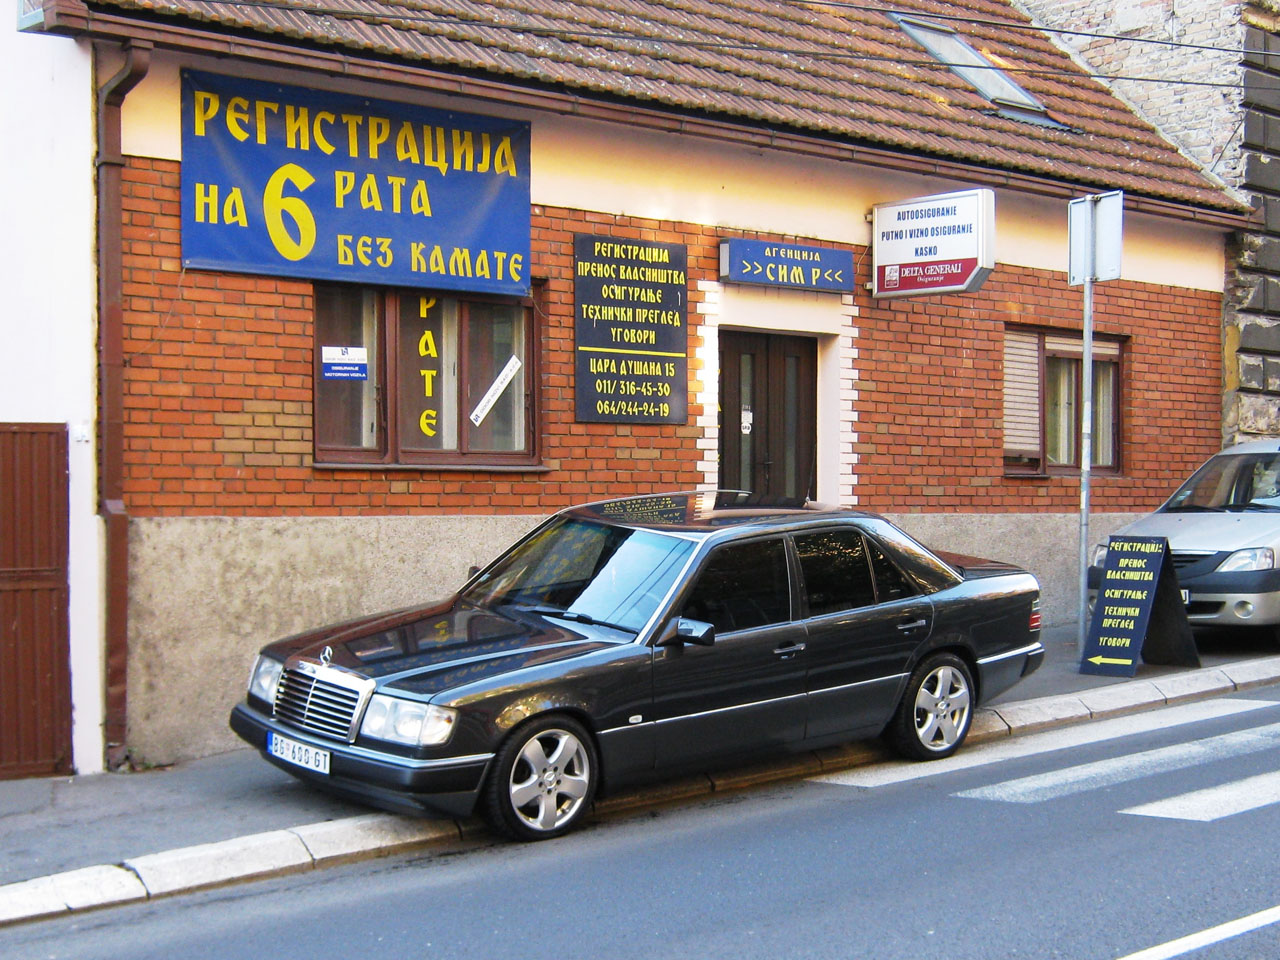 AGENCIJA SIM R Car Insurance Beograd